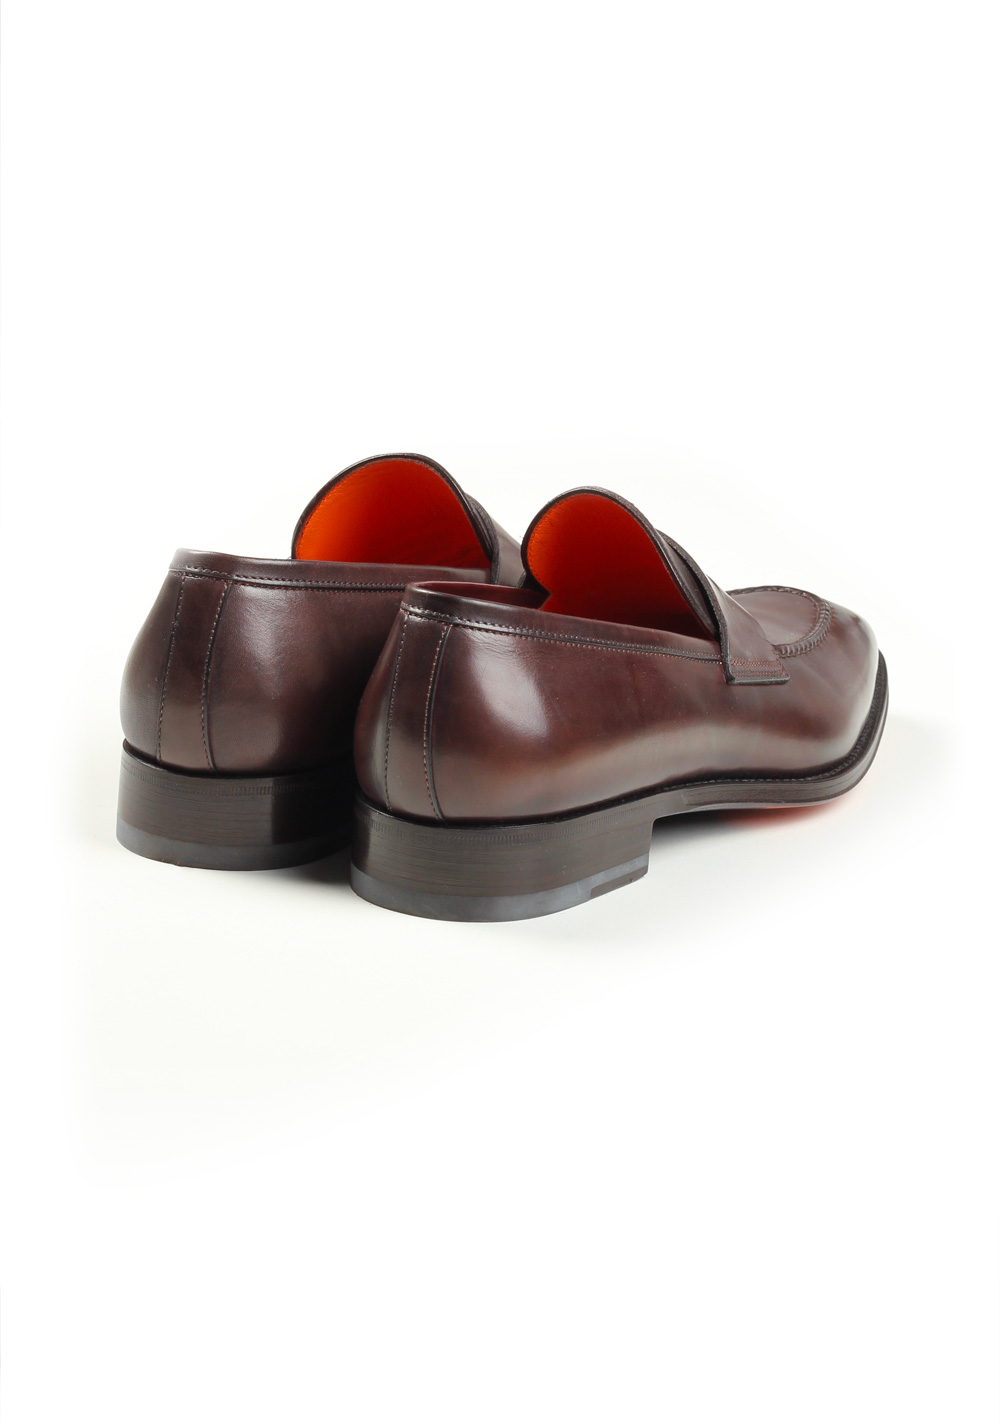 Santoni Shoes Penny Loafers Size 10.5 Uk / 11.5 U.S. / 44.5 Eur | Costume Limité